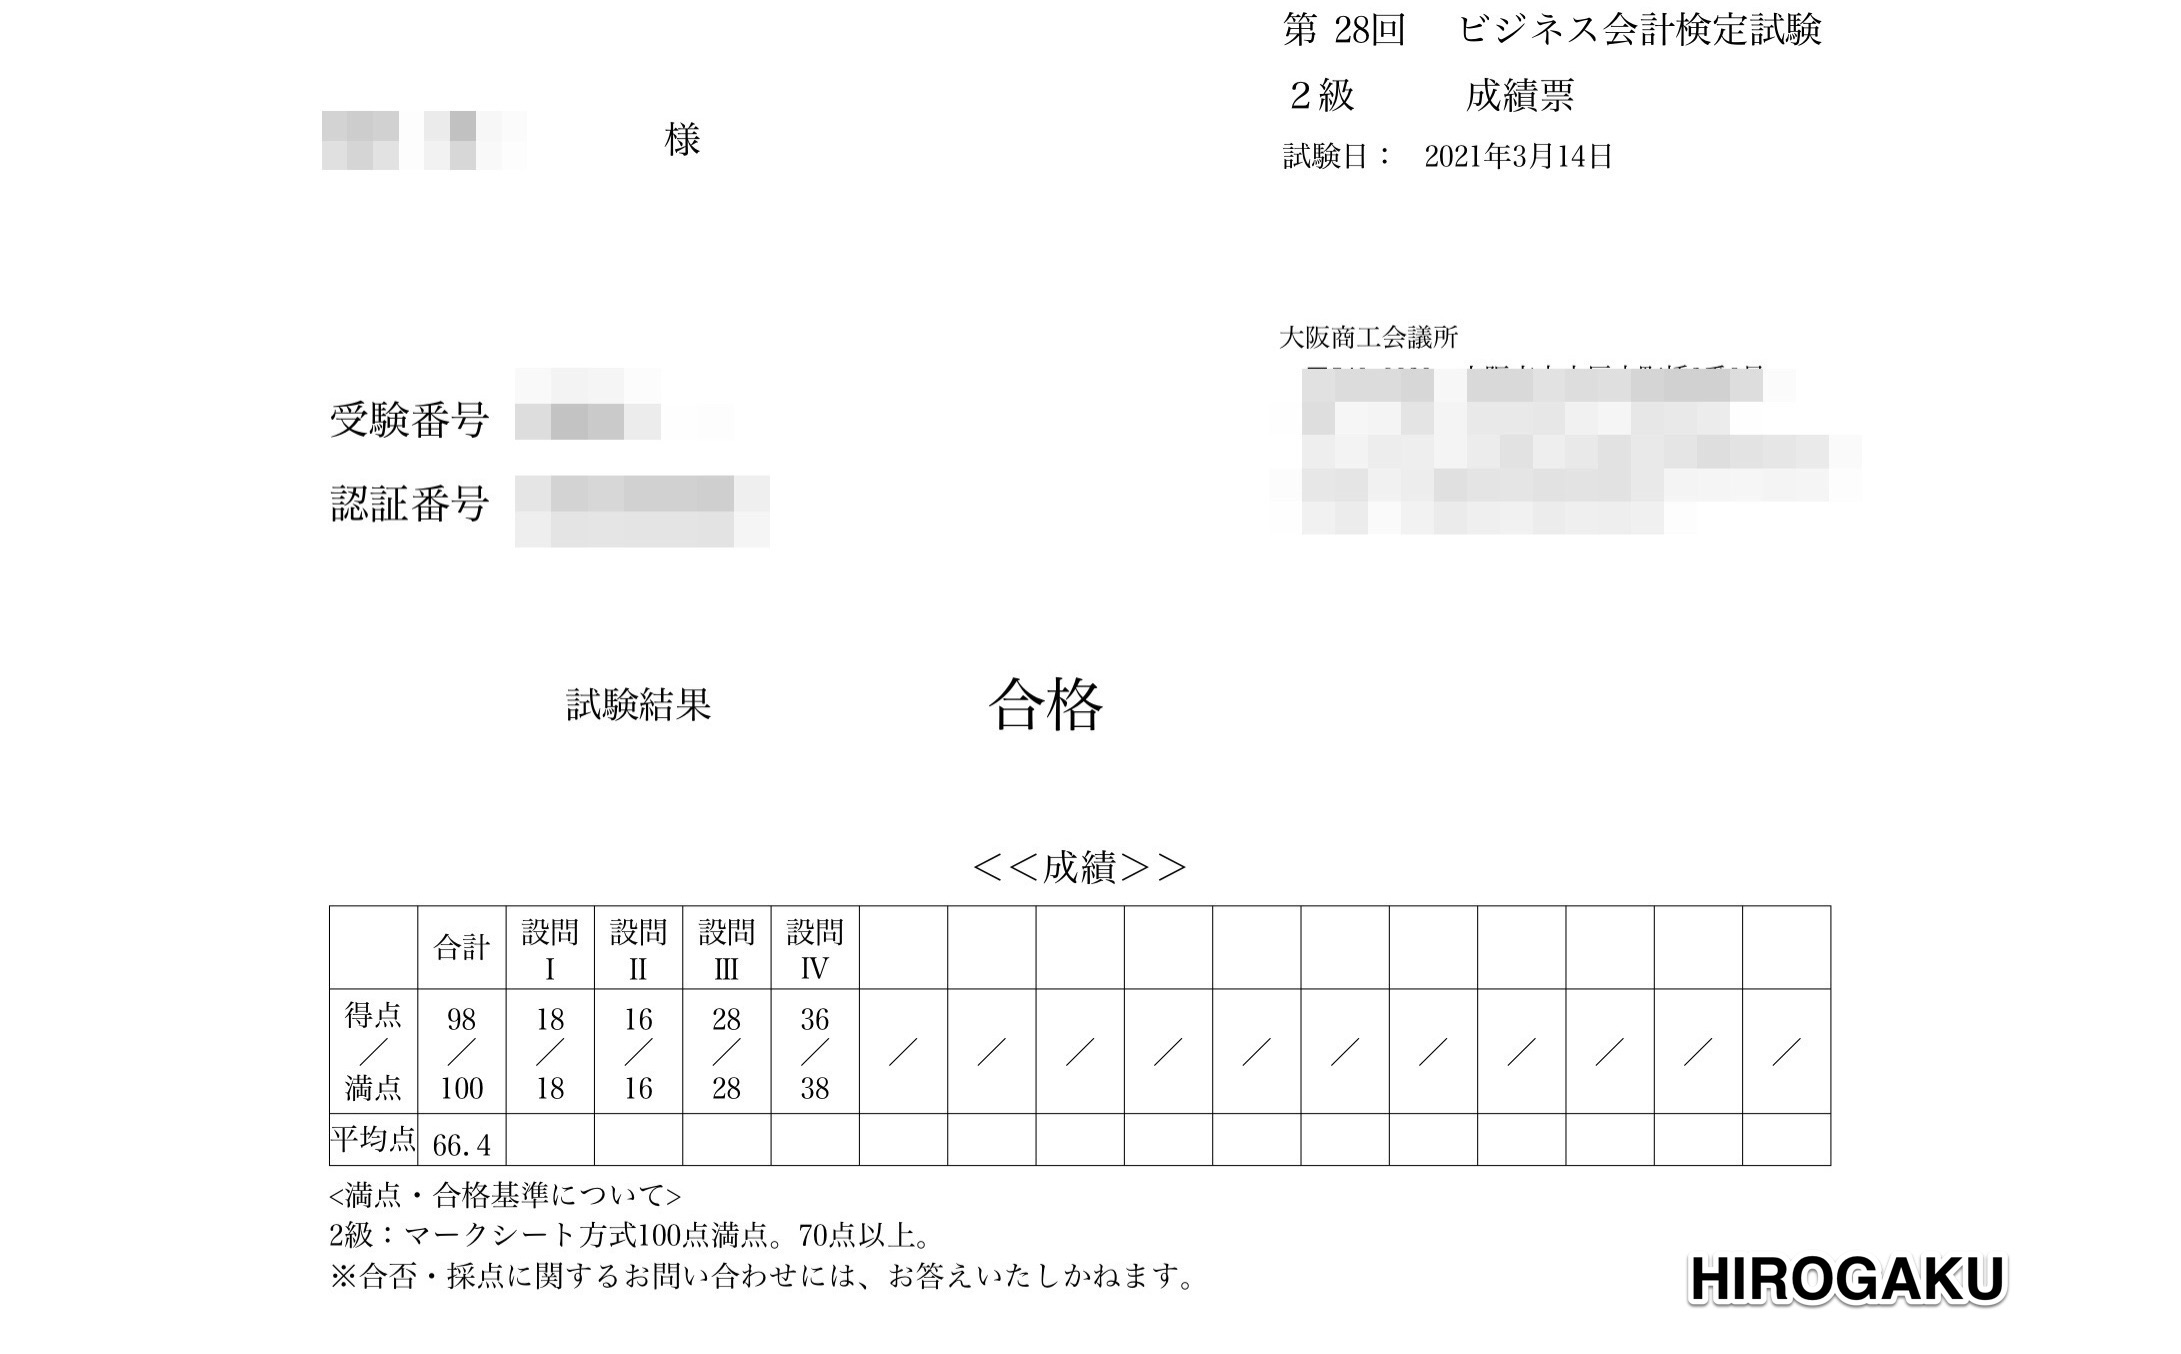 ビジネス会計検定2級 合格体験記 | HIROGAKU